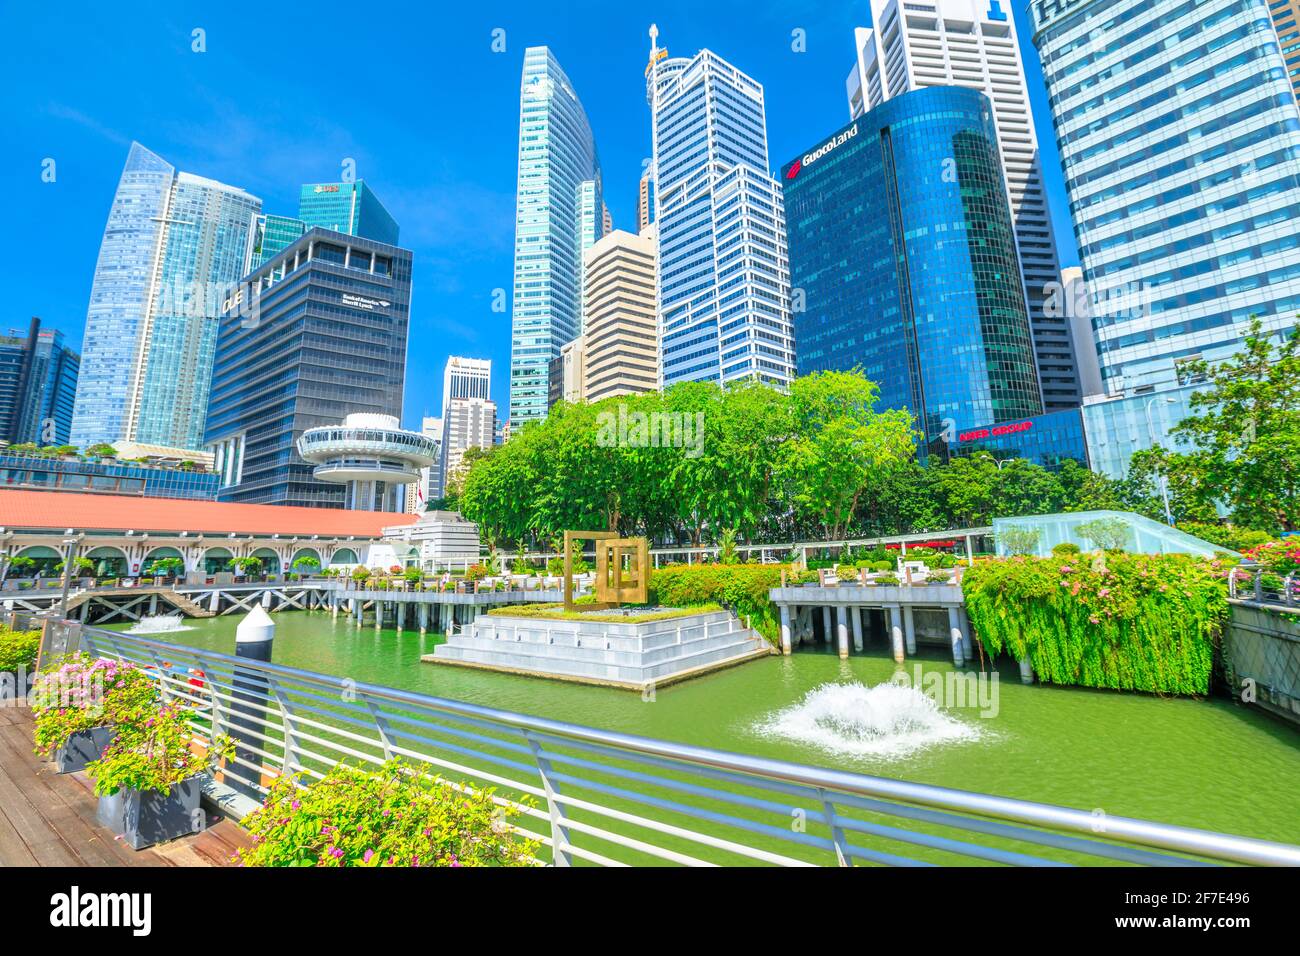 Singapur - 28. April 2018: Stadtbild von Singapur durch das Central Business District CBD Gebäude am Clifford Square der Marina Bay Downtown Area, The Stockfoto